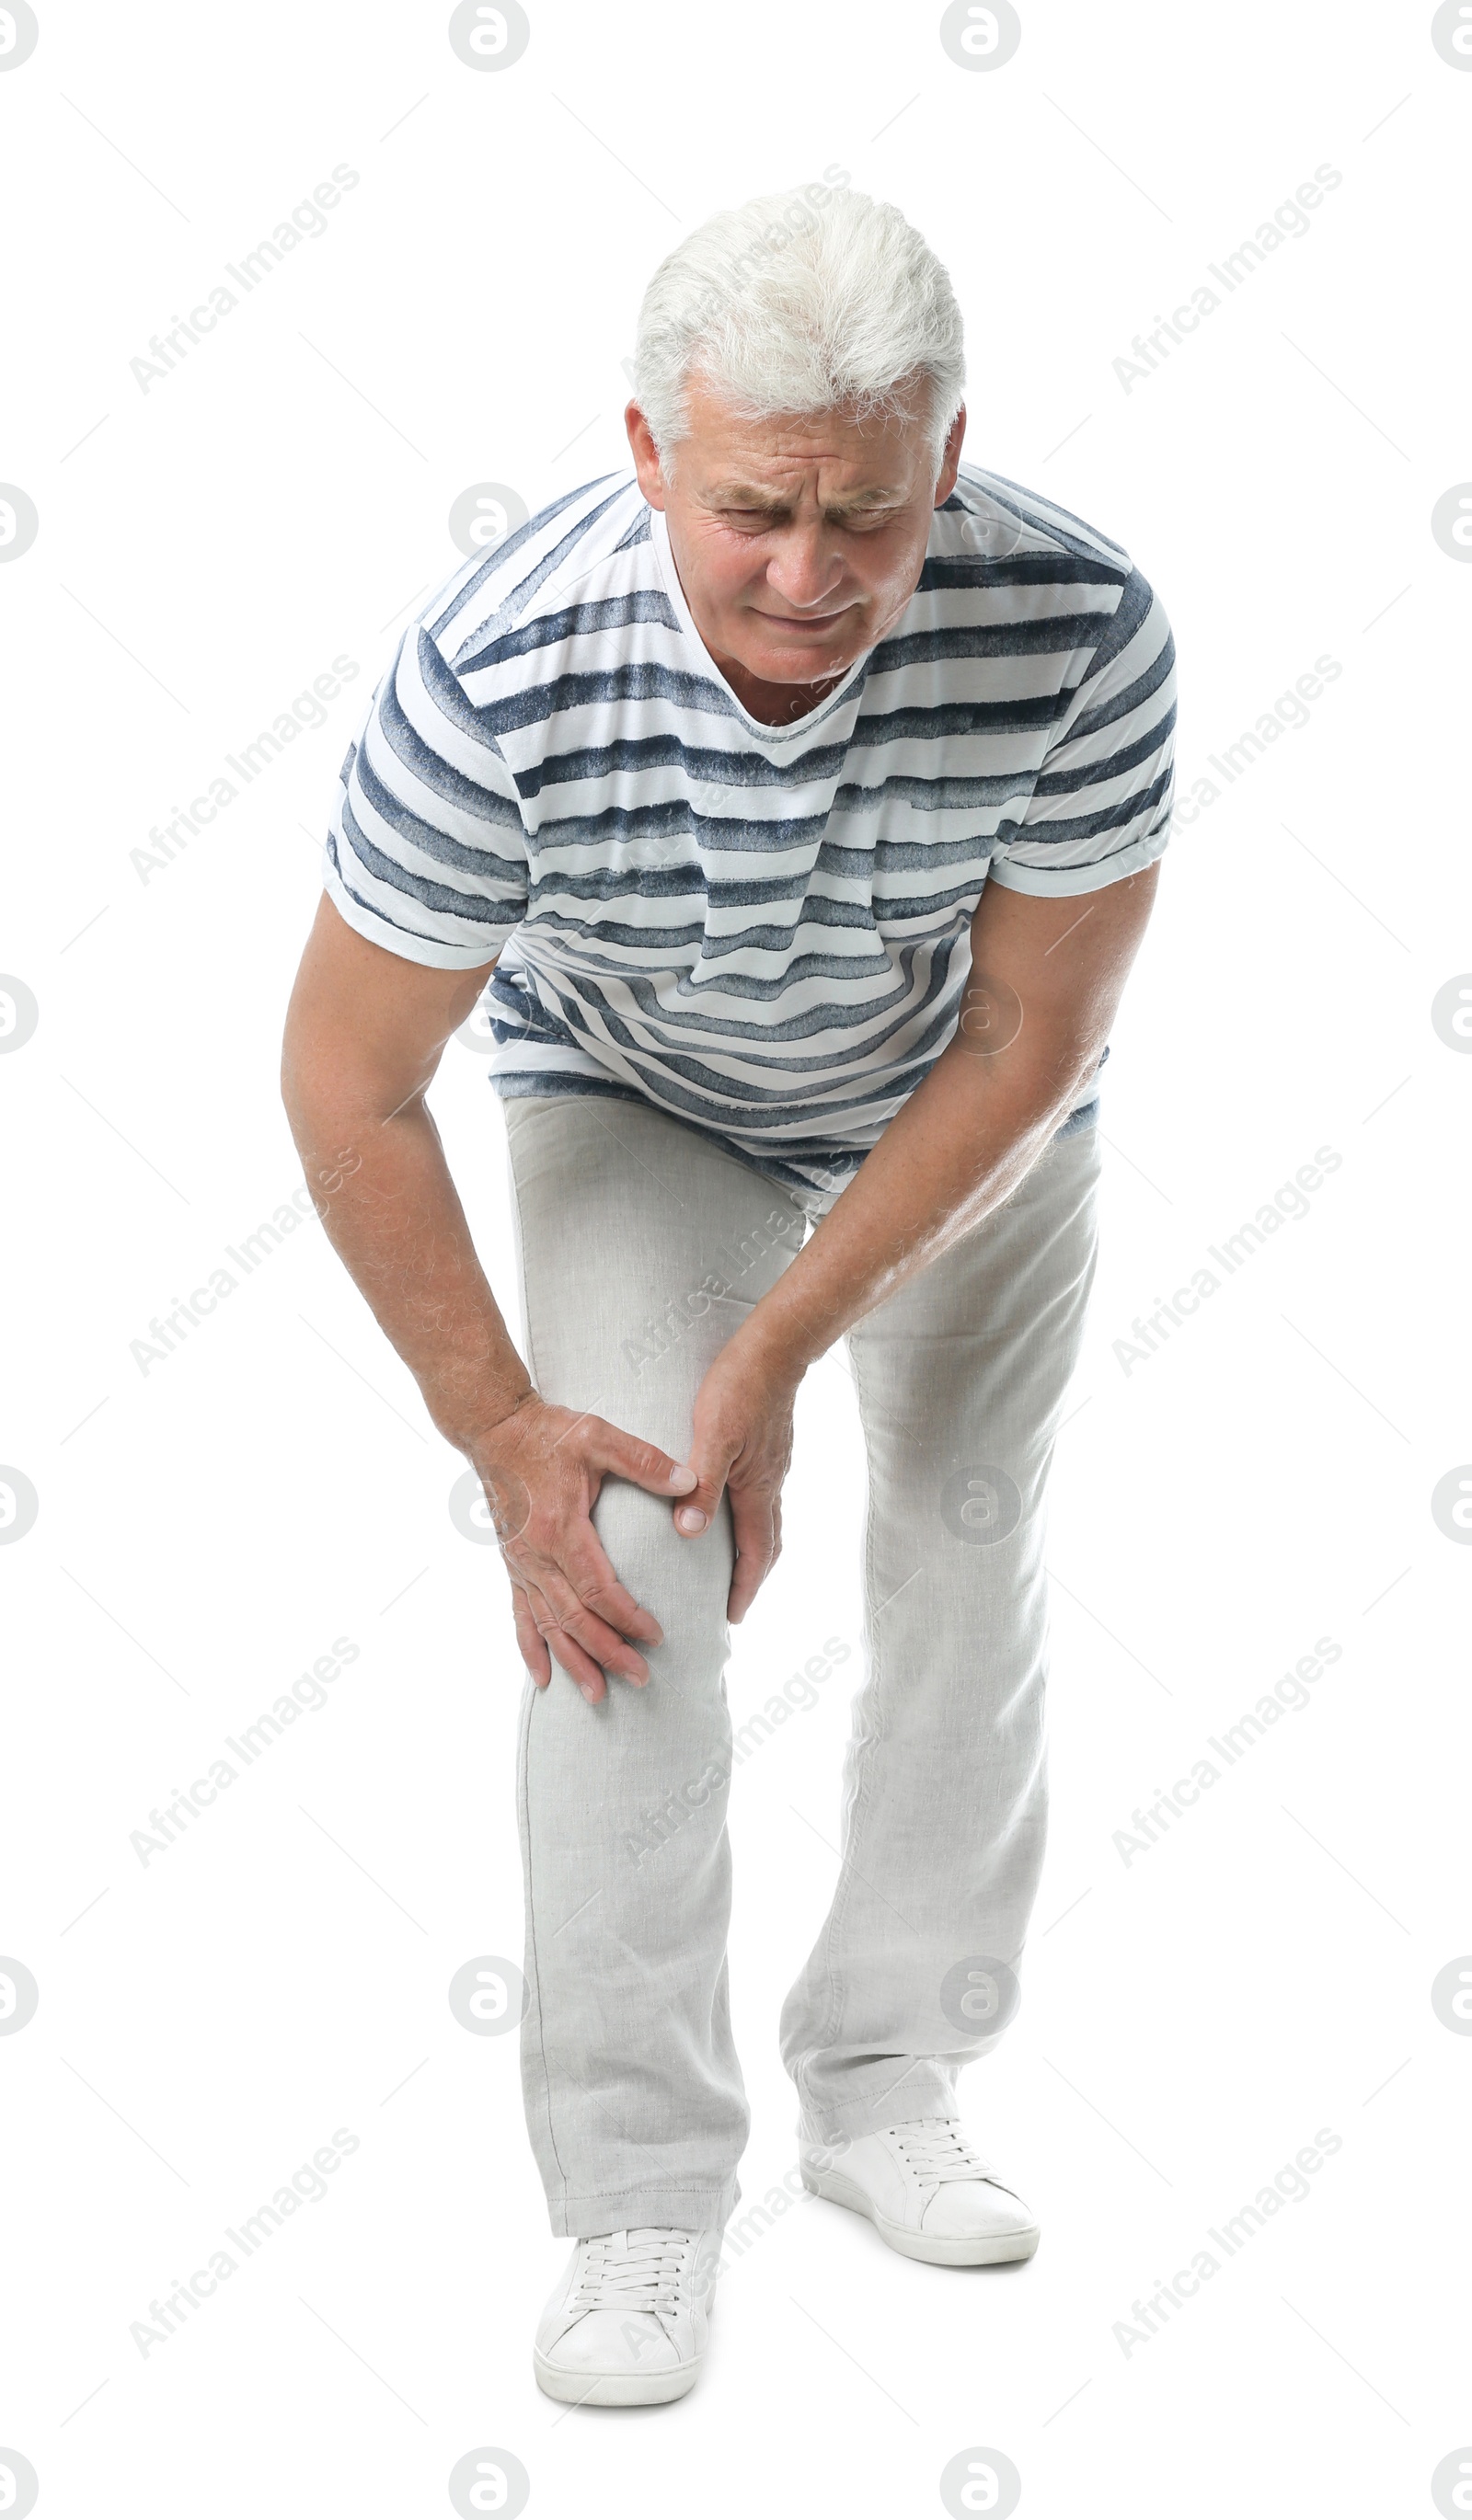 Photo of Full length portrait of senior man having knee problems on white background